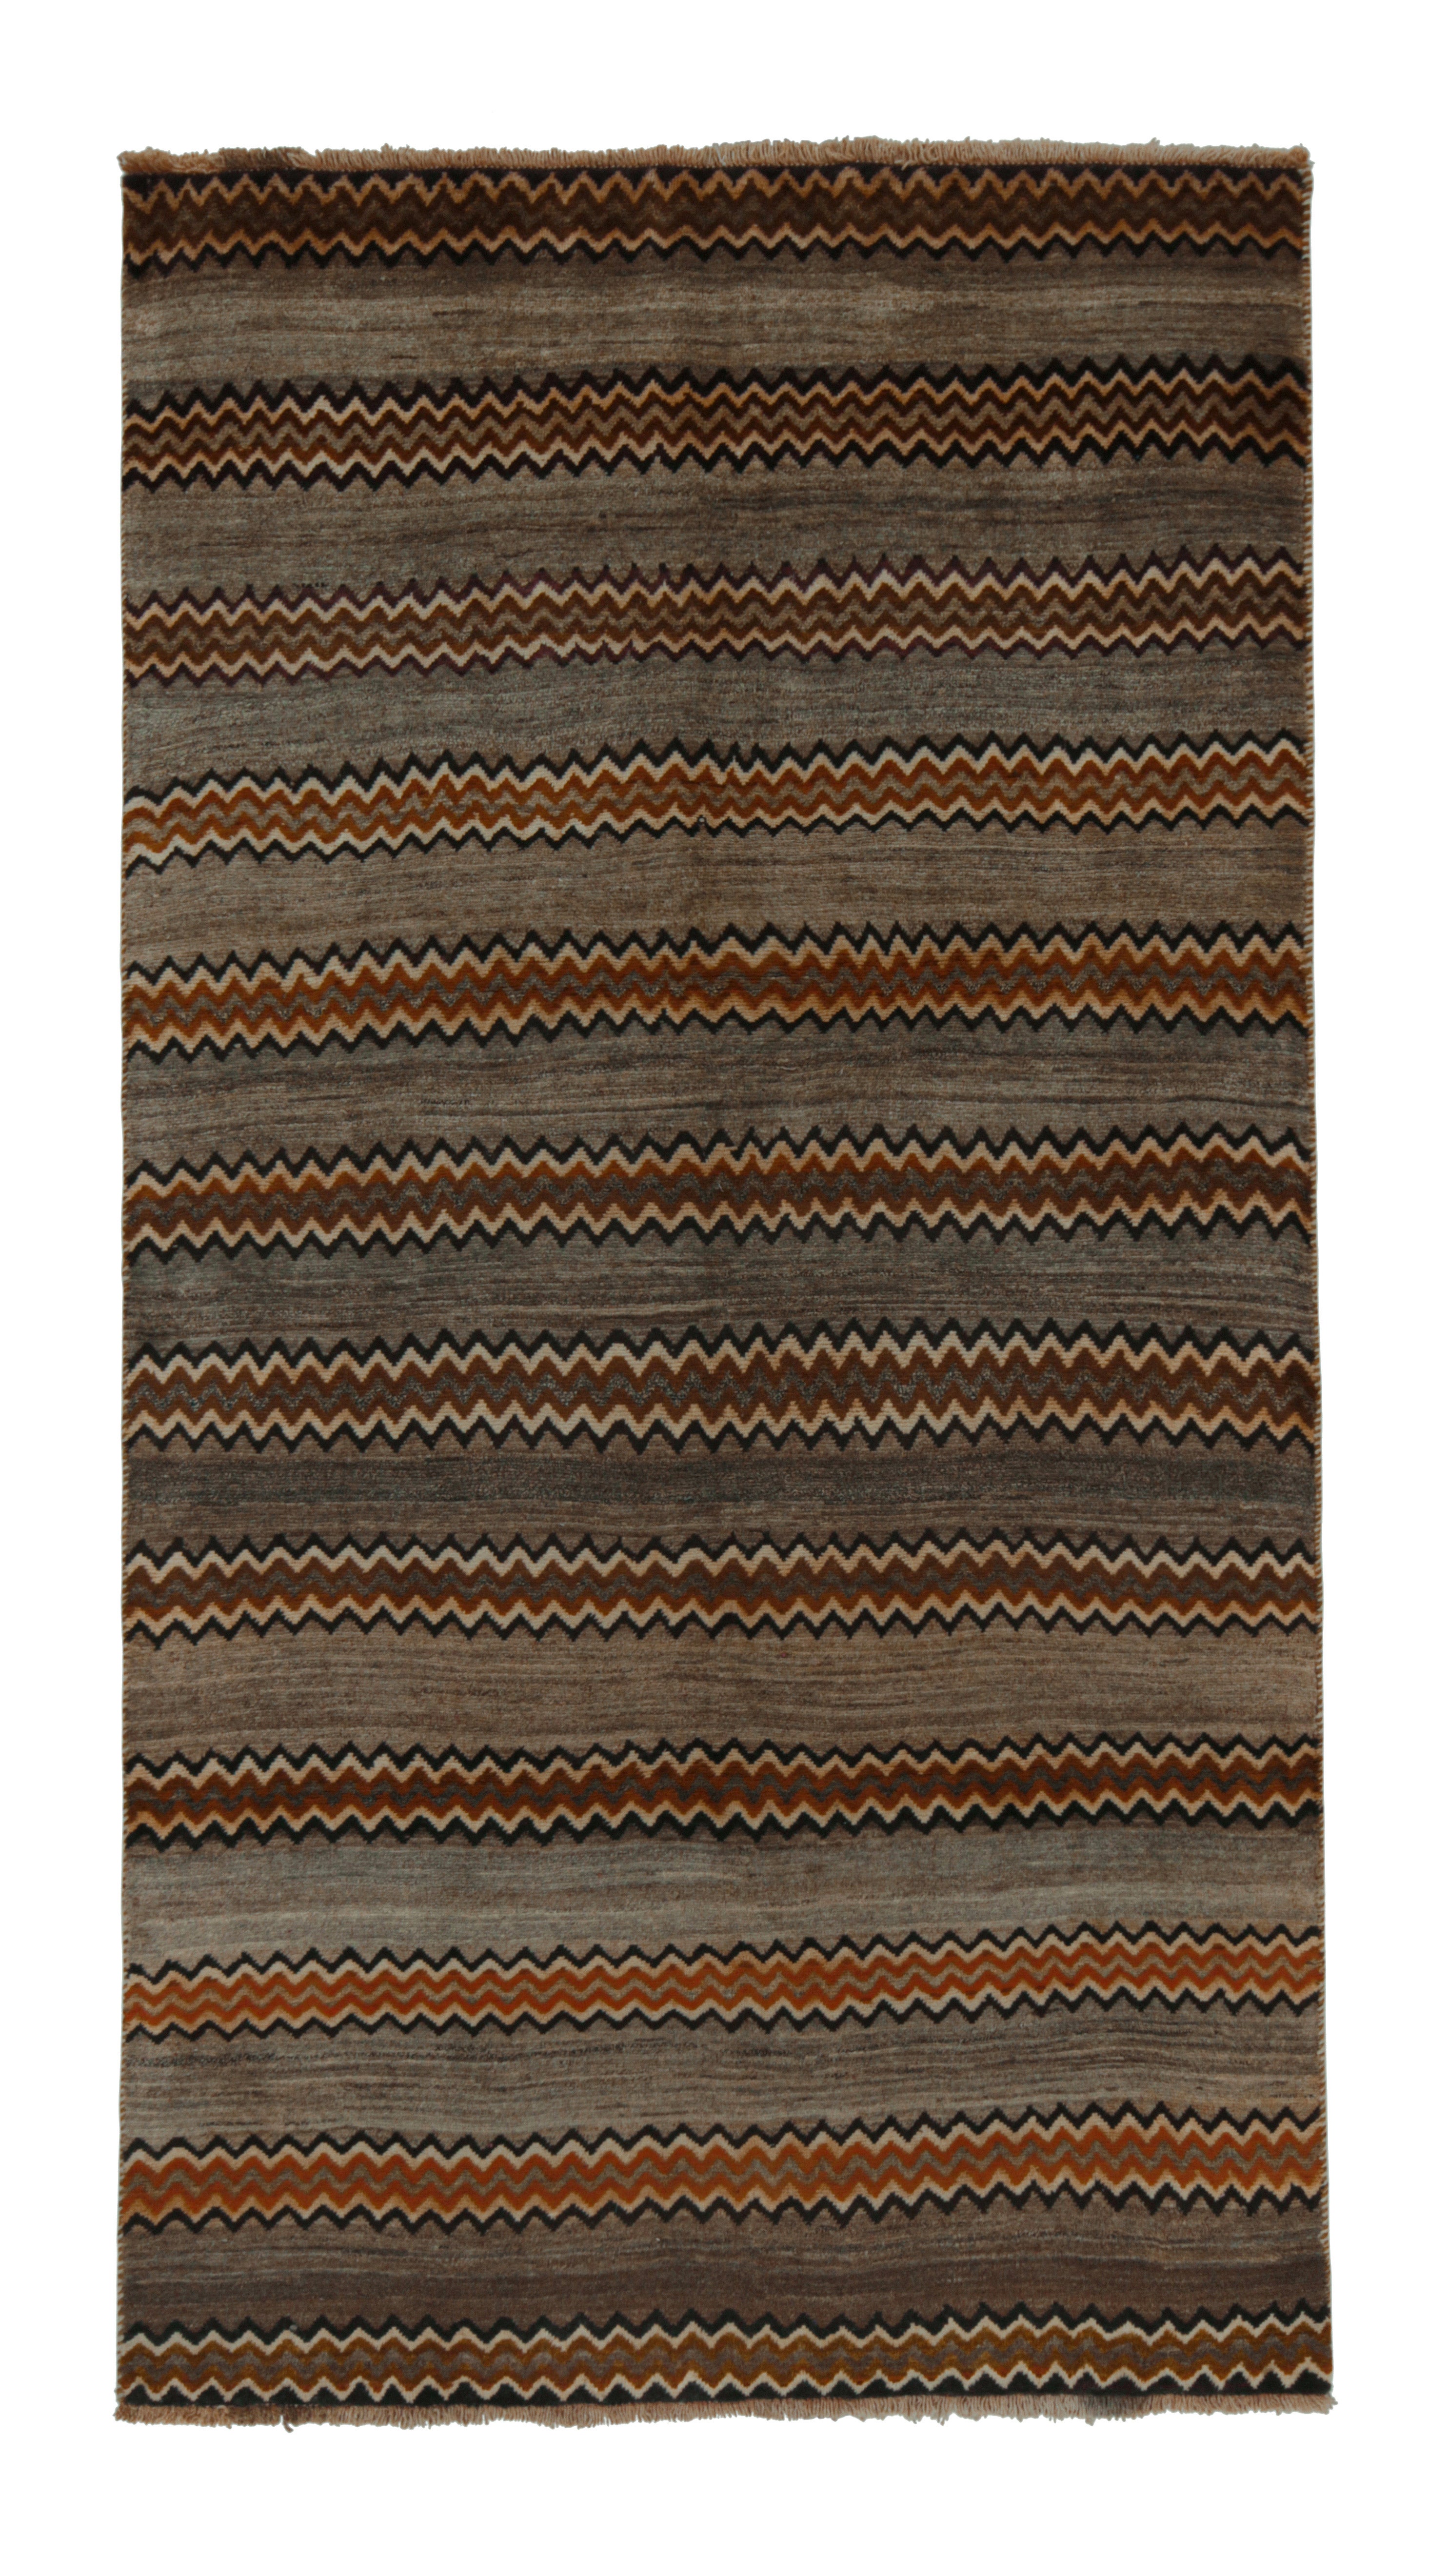 Gabbeh Tribal Teppich in Grau & Beige-Braun mit Chevron-Muster von Teppich & Kelim